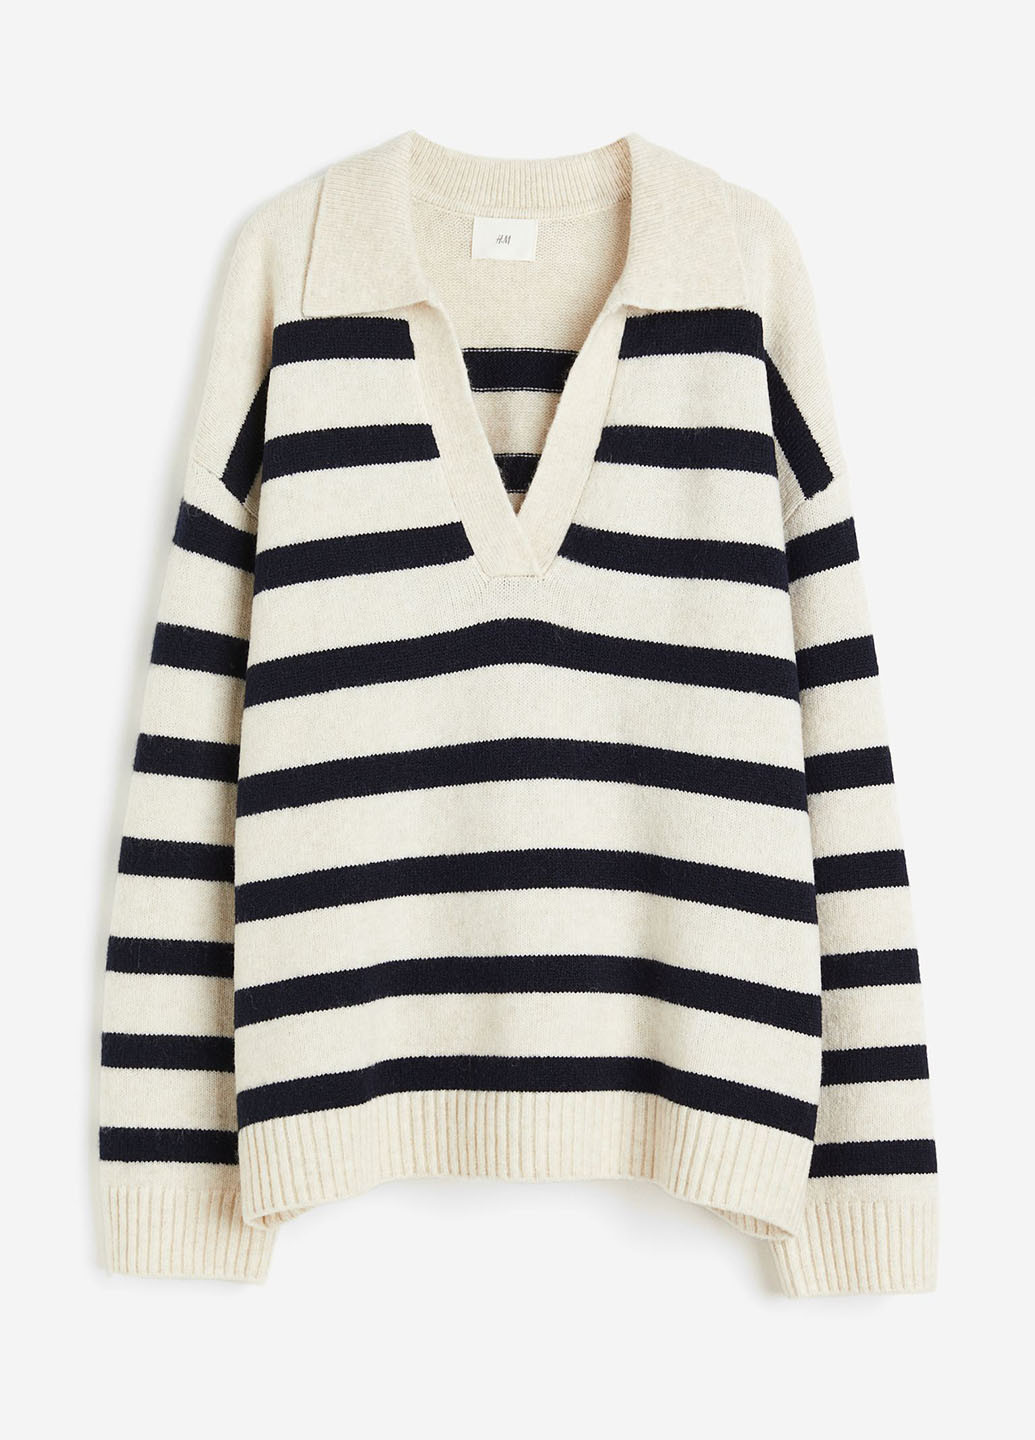 Комбинированный демисезонный пуловер пуловер H&M